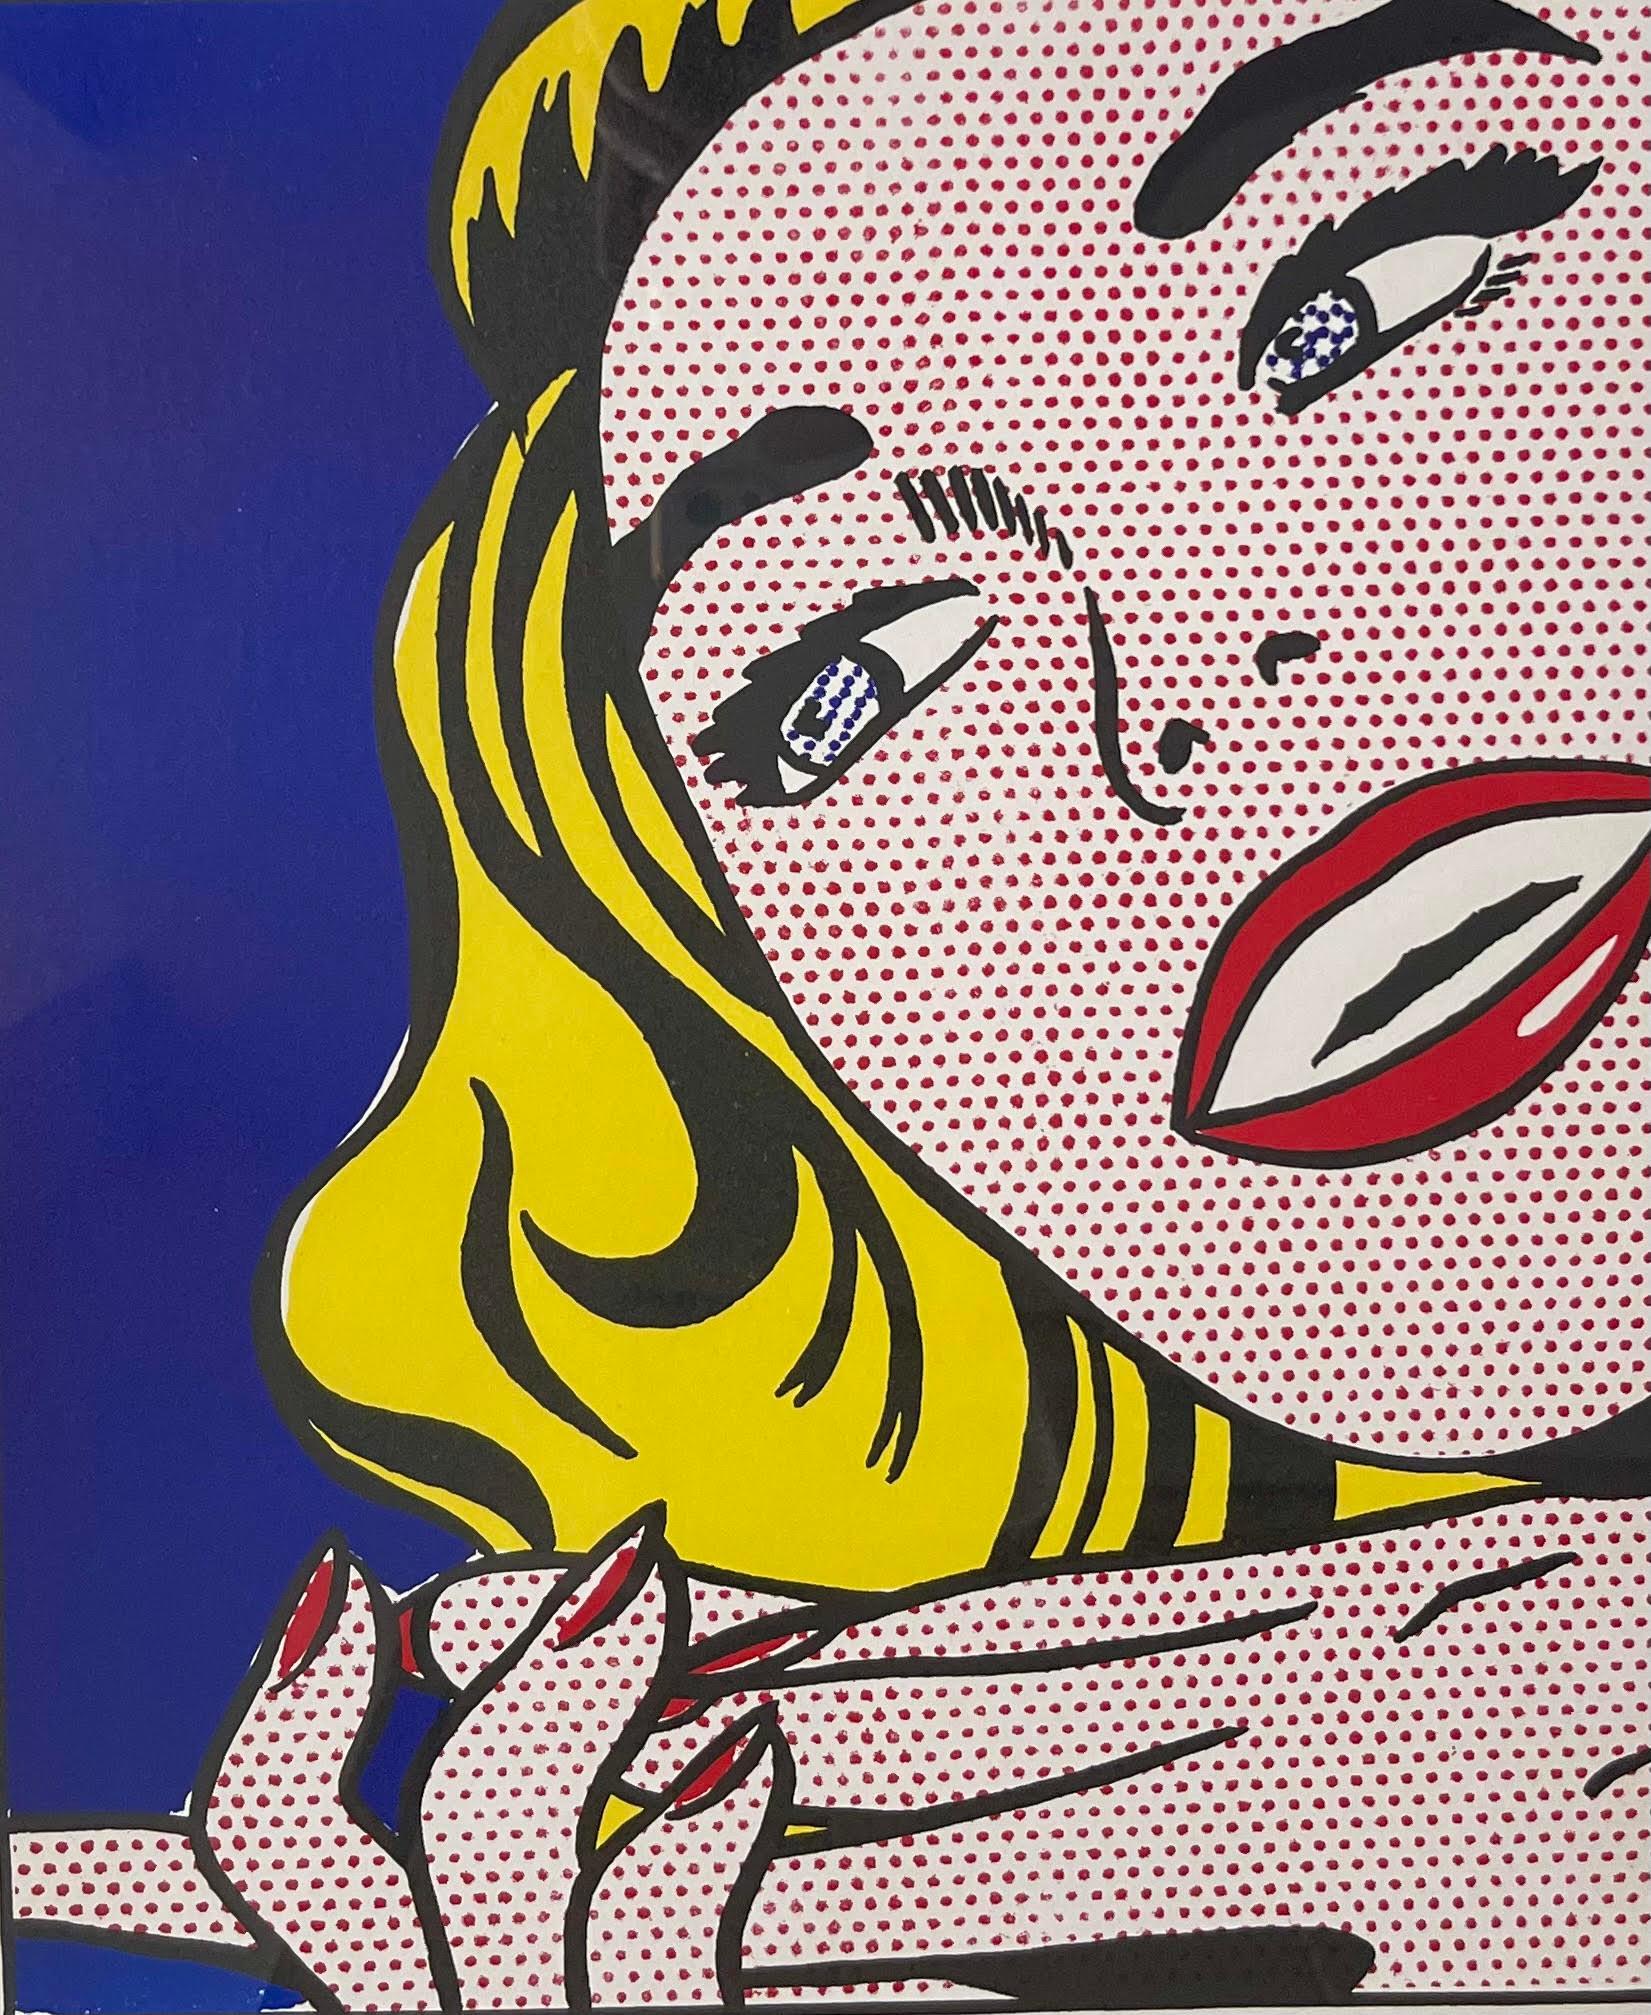 Roy Lichtenstein
Girl With Spraycan (édition de luxe signée à la main du portfolio Life à 1 cent, provenant de la succession de l'artiste Robert Indiana), 1964
Édition limitée à 100 exemplaires (#85/100) 
Lithographie étalée sur deux feuilles sur